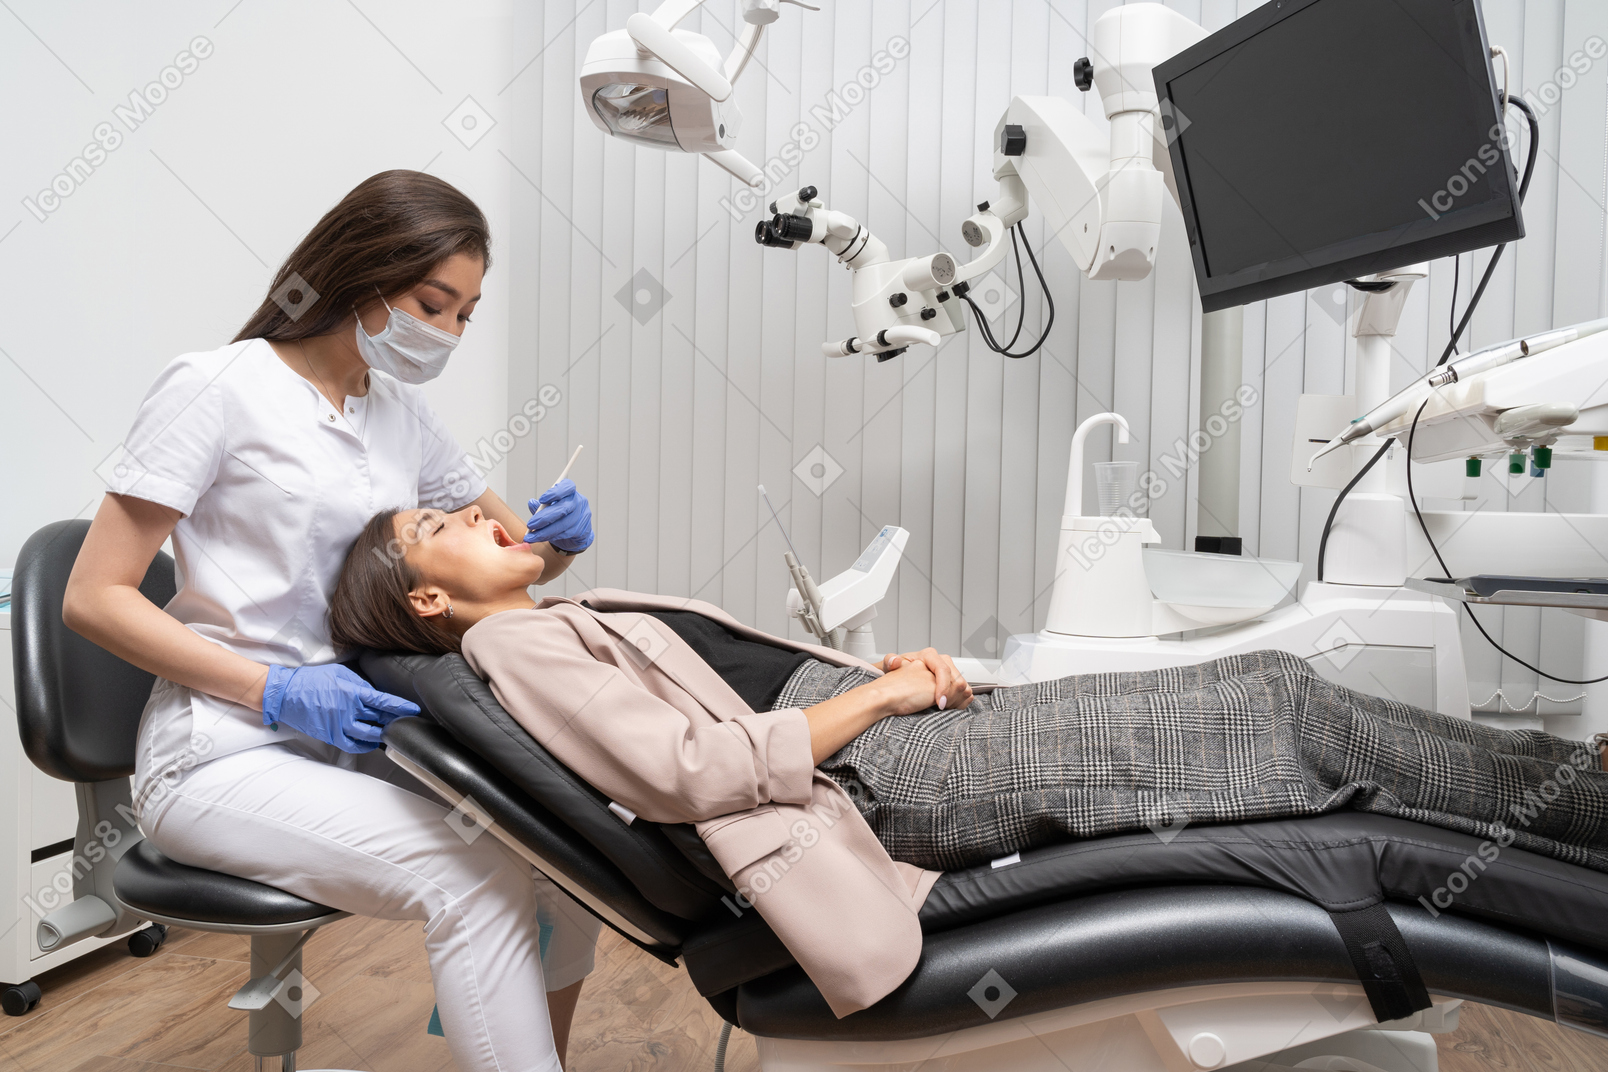 병원 캐비닛에 누워있는 그녀의 여성 환자를 검사하는 여성 치과 의사의 전체 길이